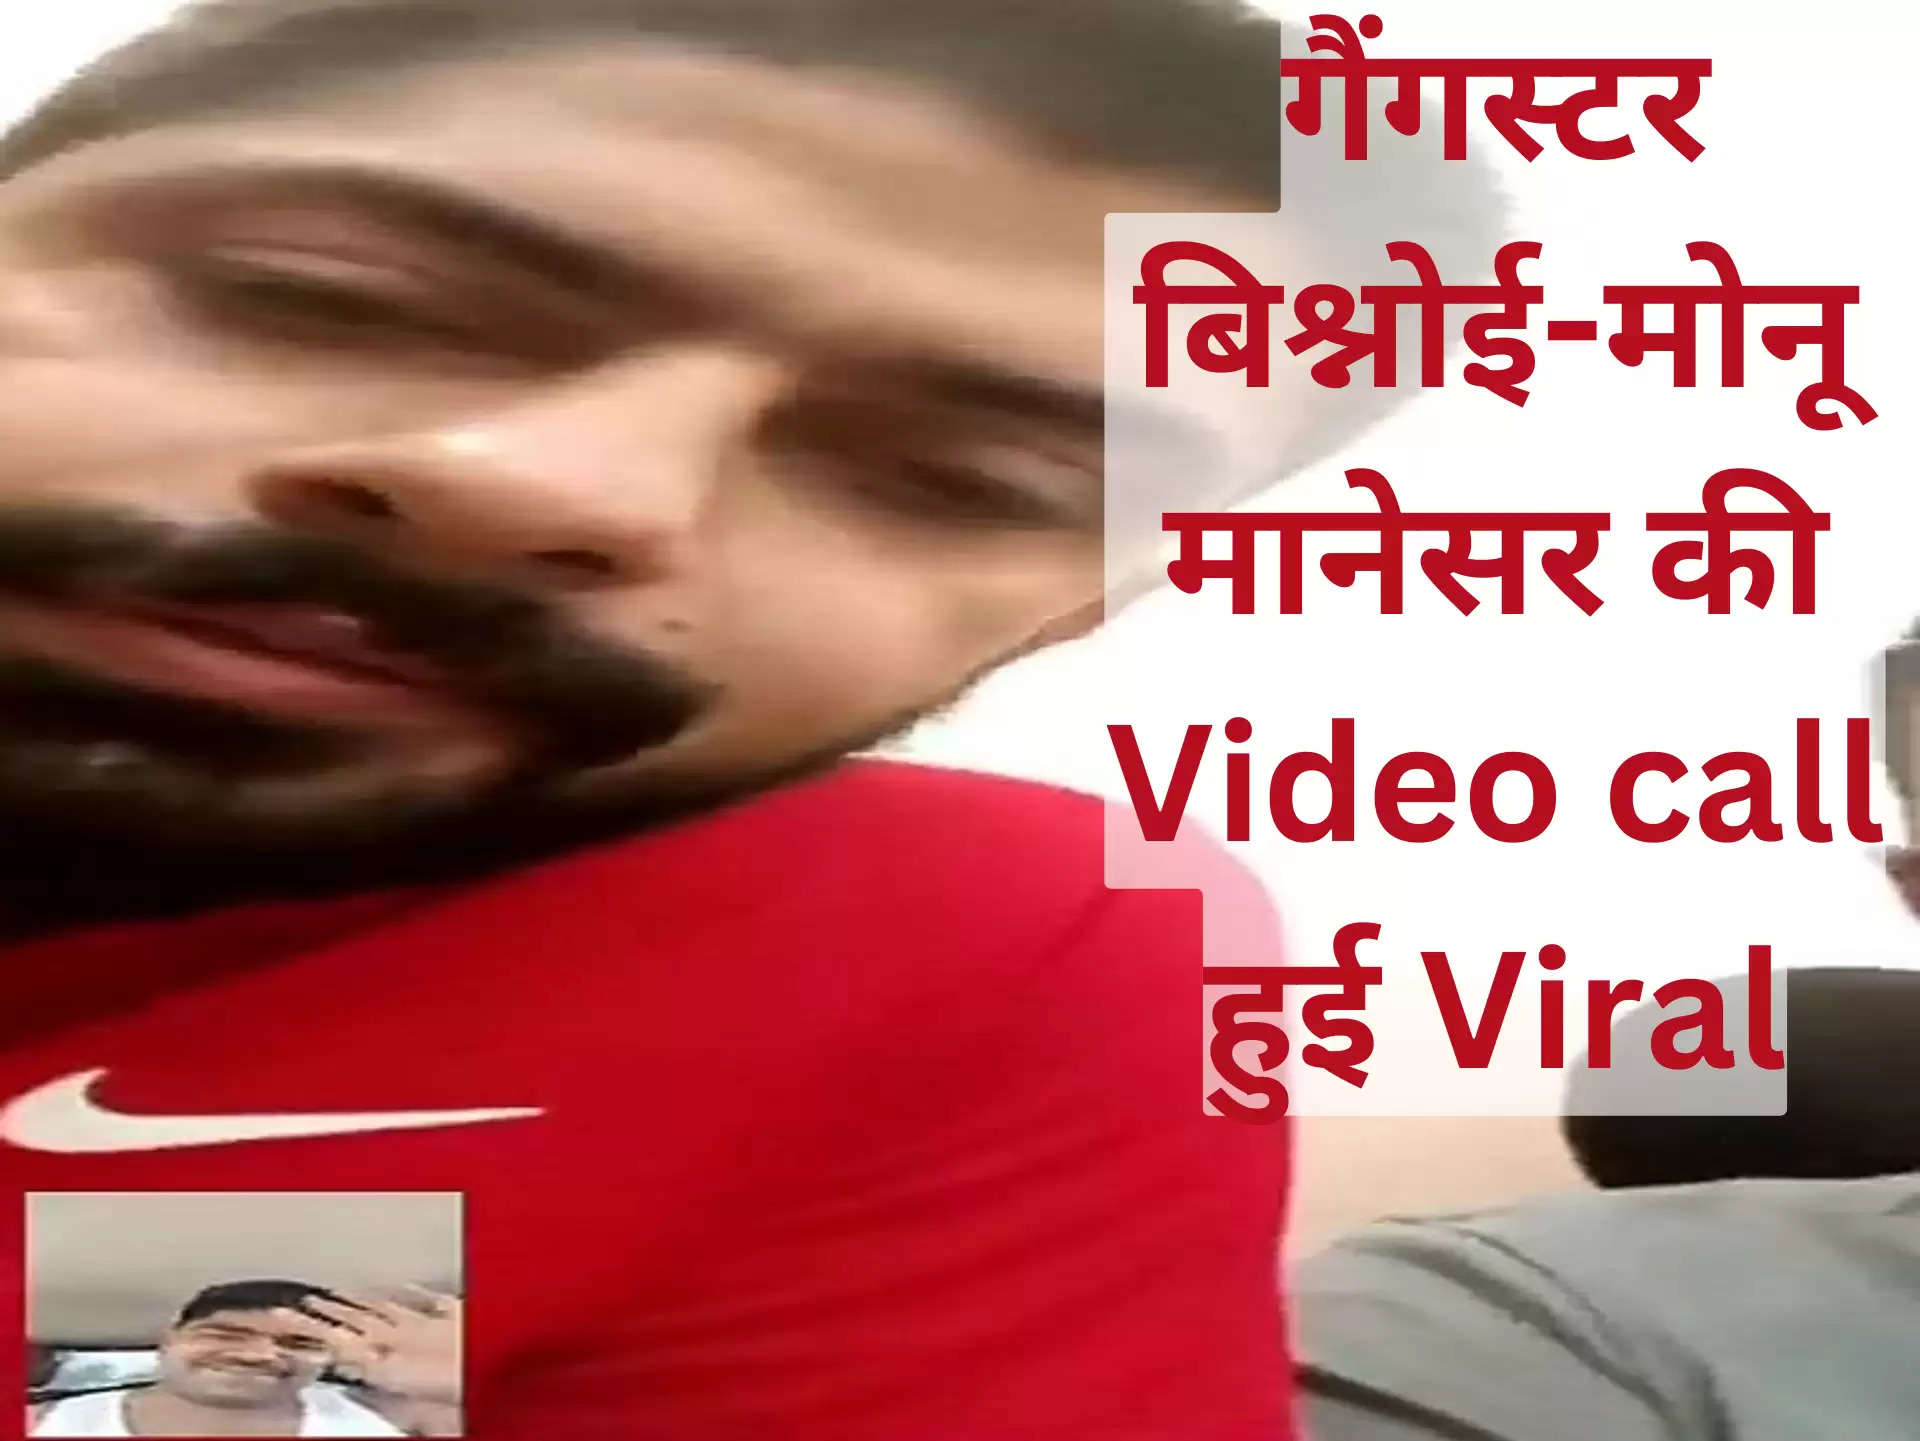 गैंगस्टर बिश्नोई-मोनू मानेसर की Video call हुई Viral